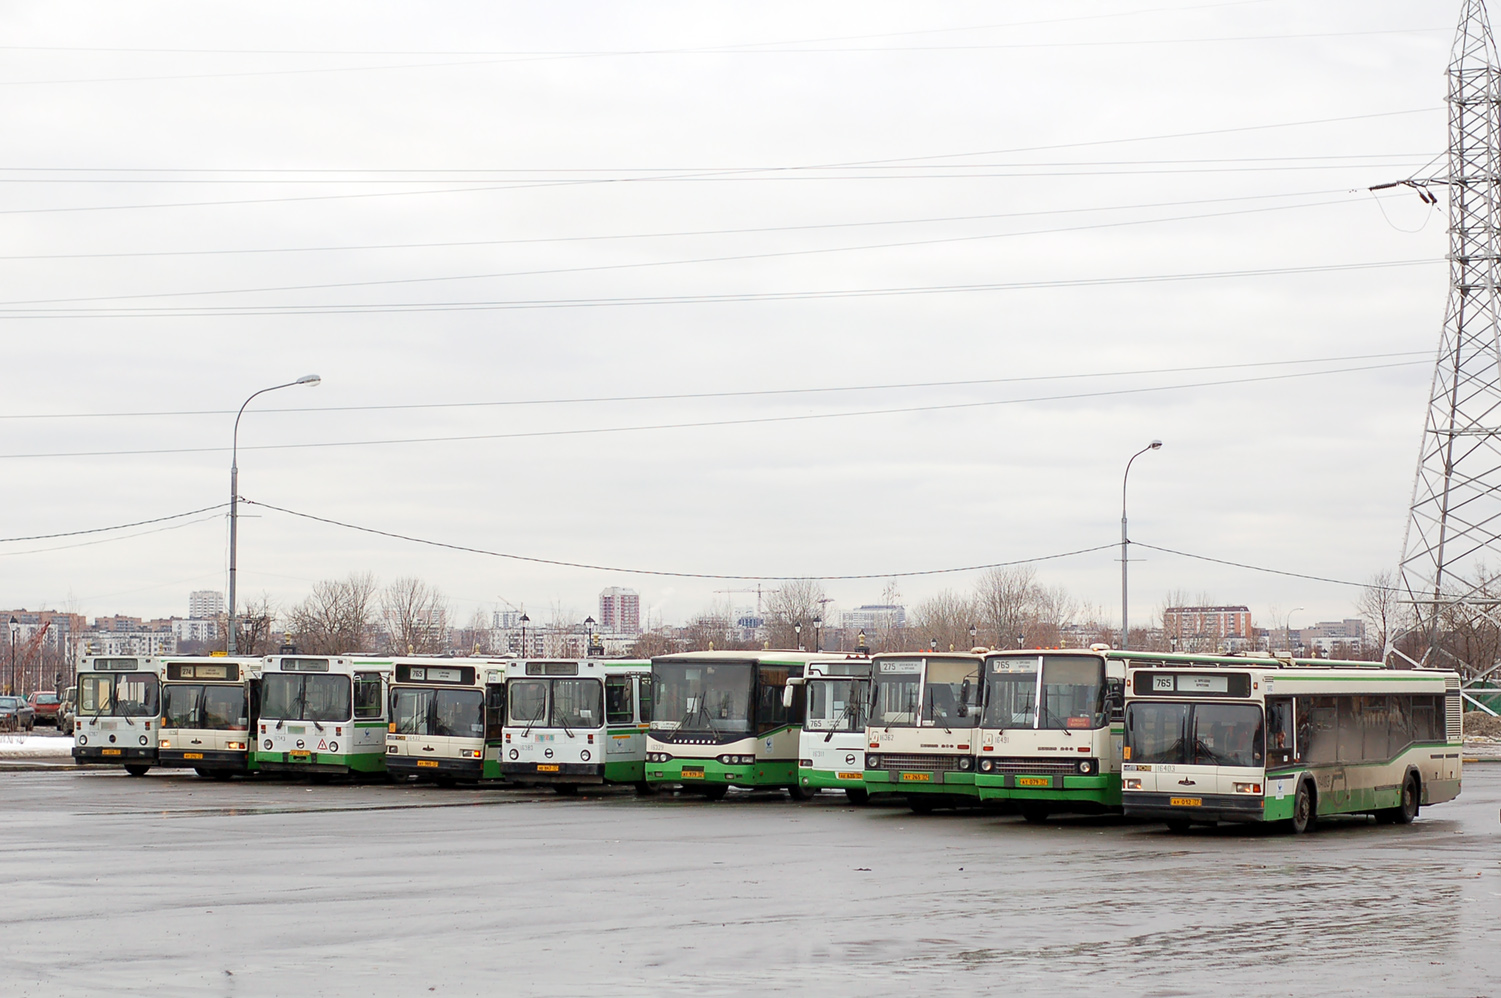 Moskau — Bus stations